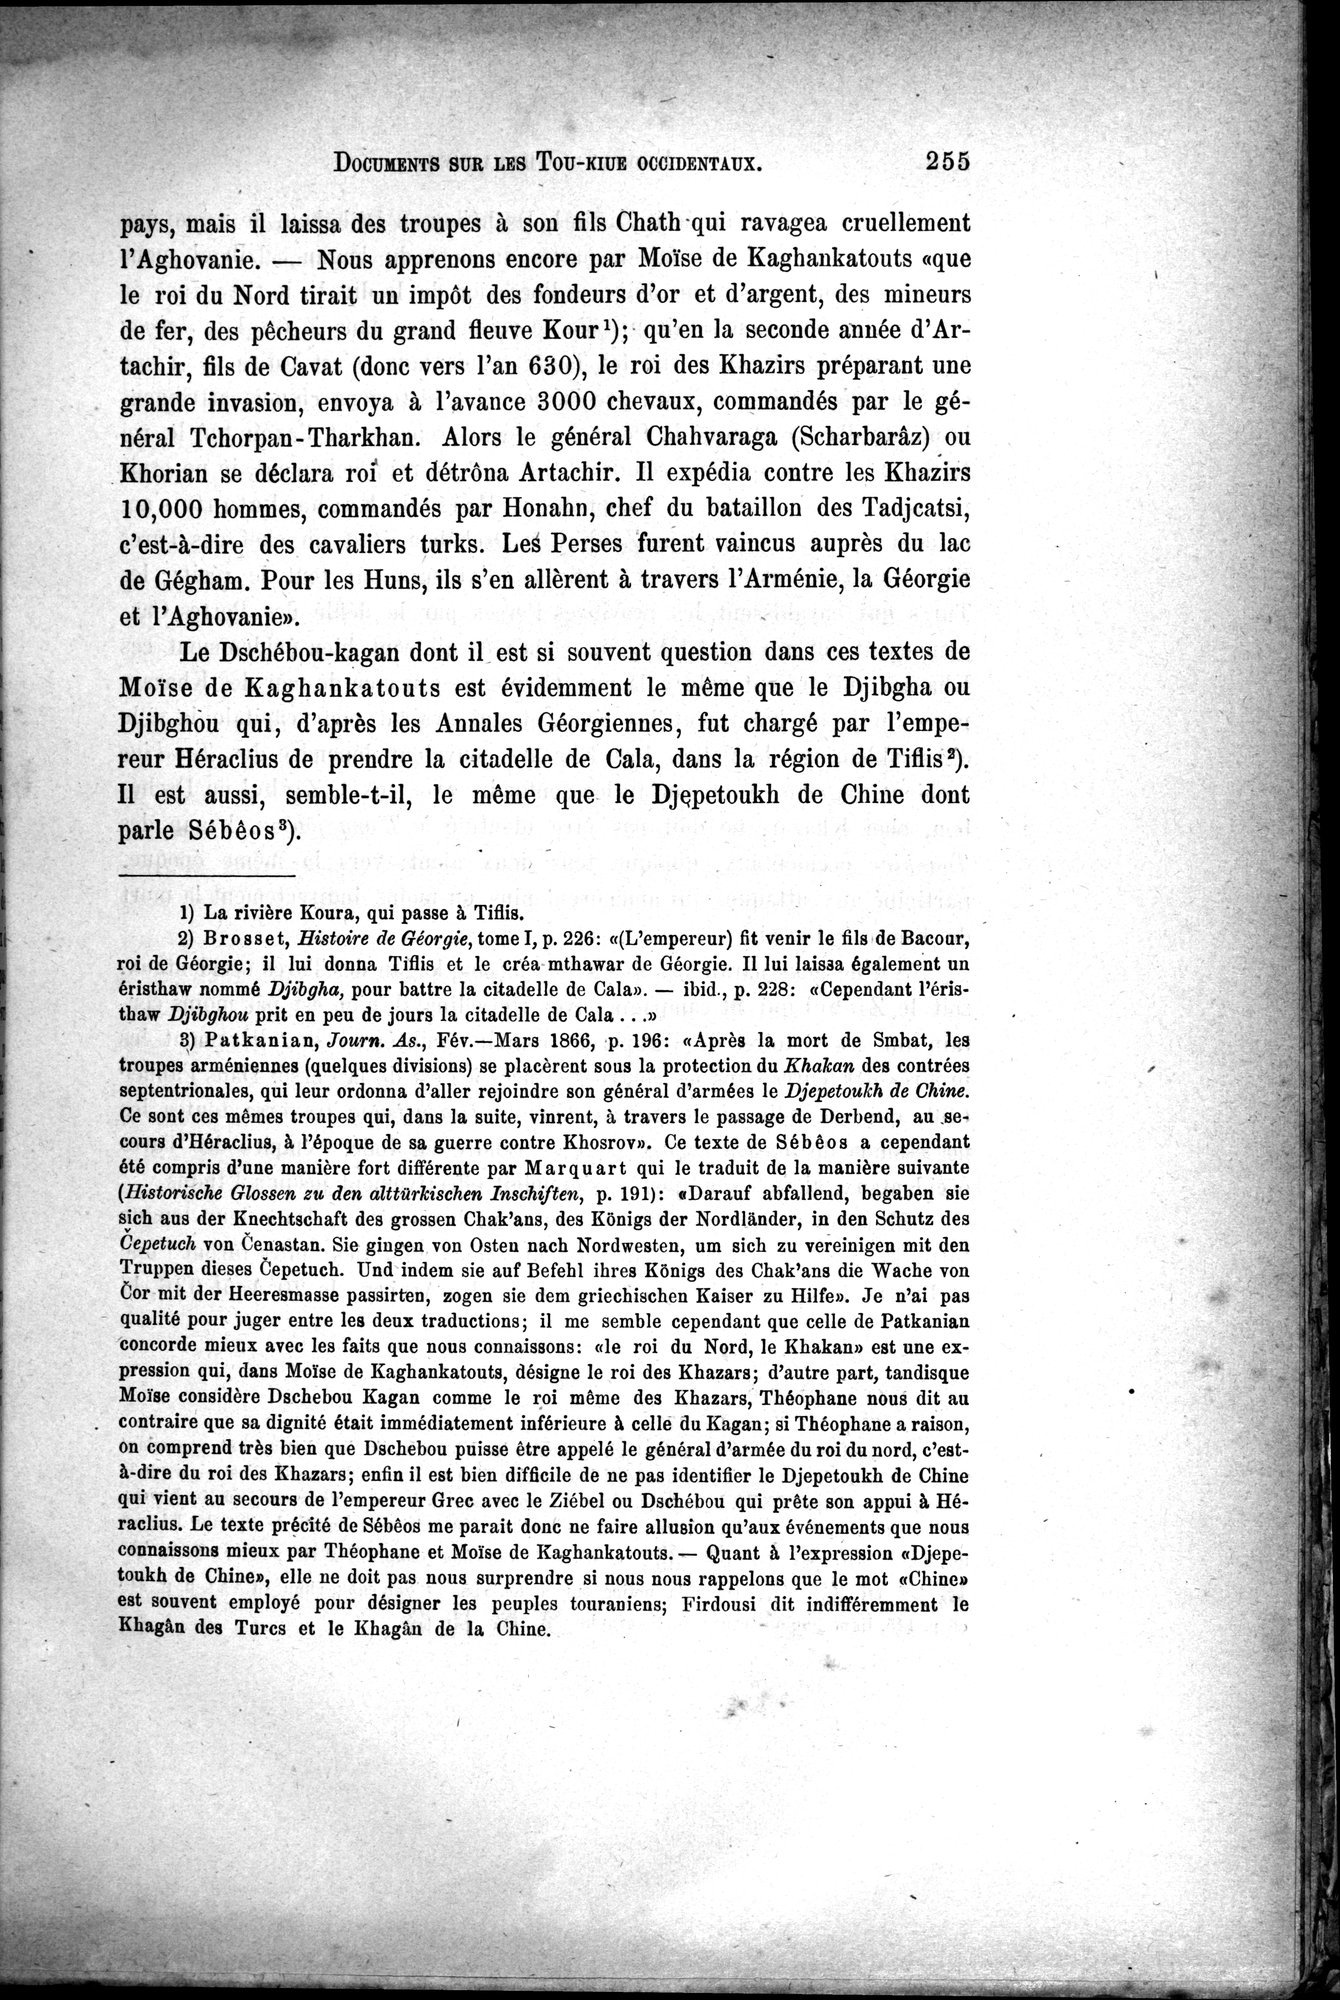 Documents sur les Tou-kiue (Turcs) occidentaux : vol.1 / Page 265 (Grayscale High Resolution Image)